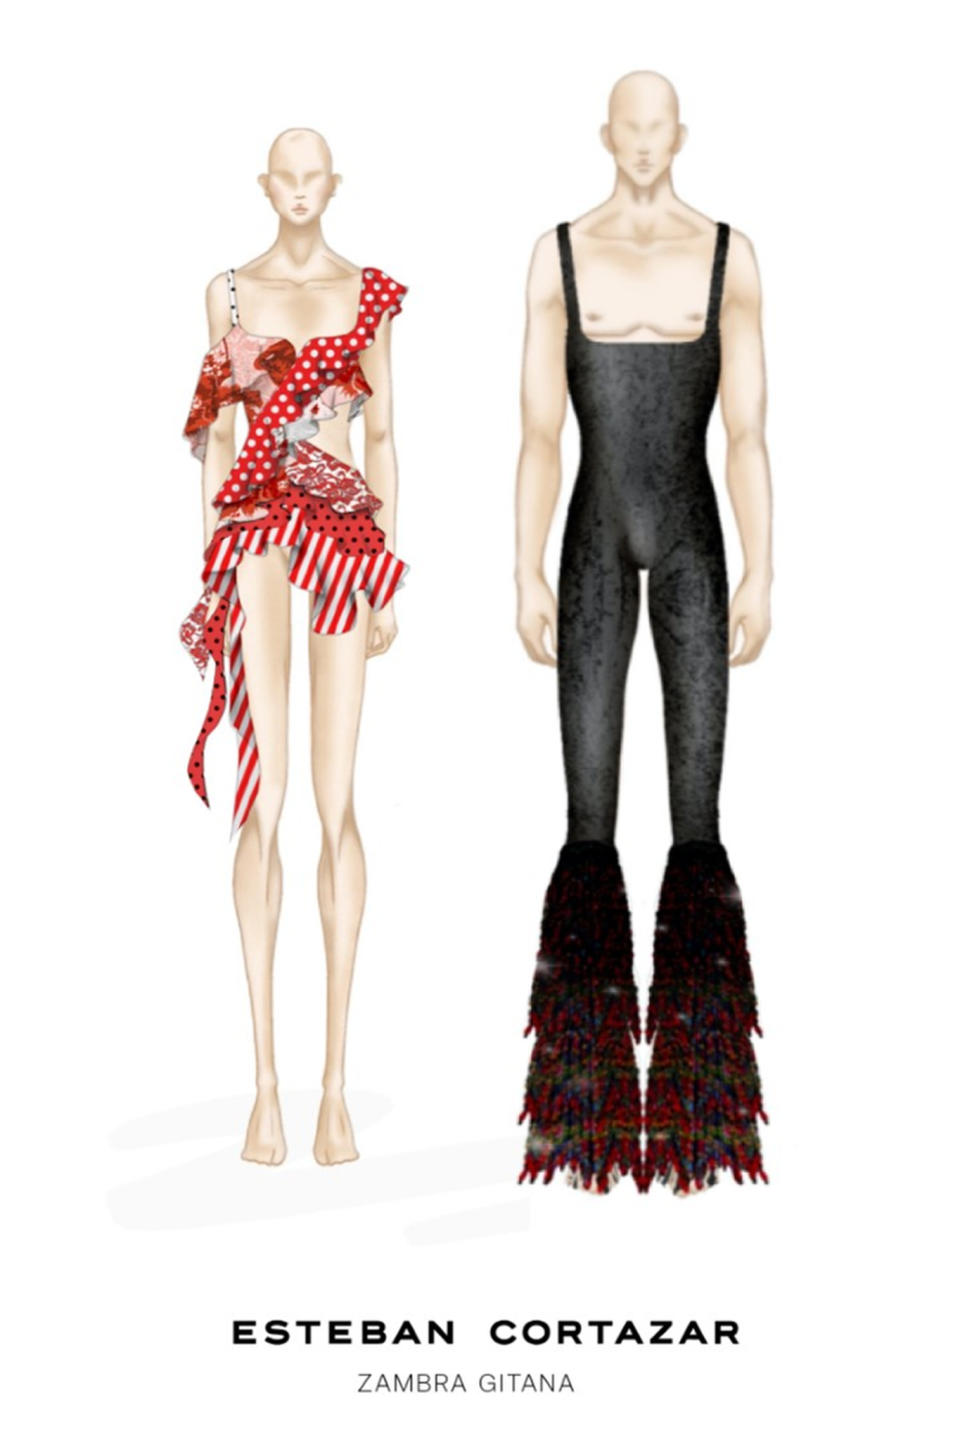 Sketches of Esteban Cortázar’s costume designs for Miami Ballet.